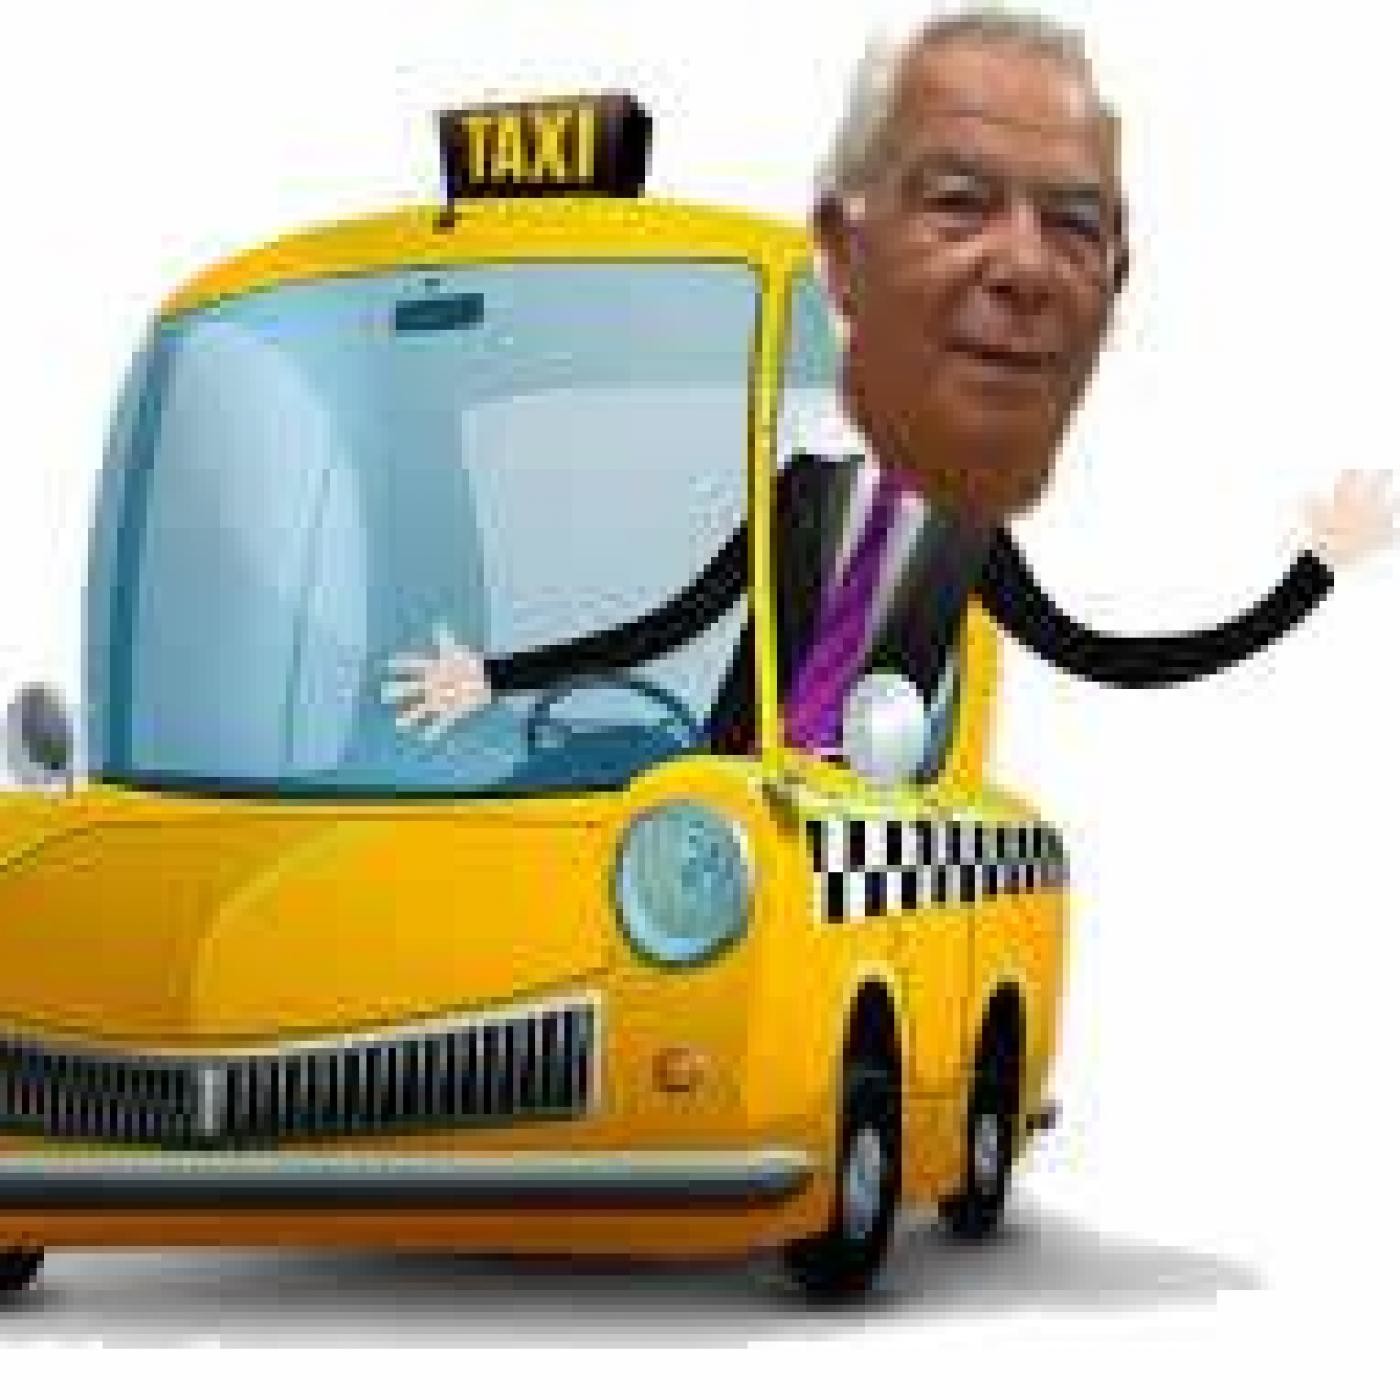 La hora del taxi, viernes 13 de mayo de 2016